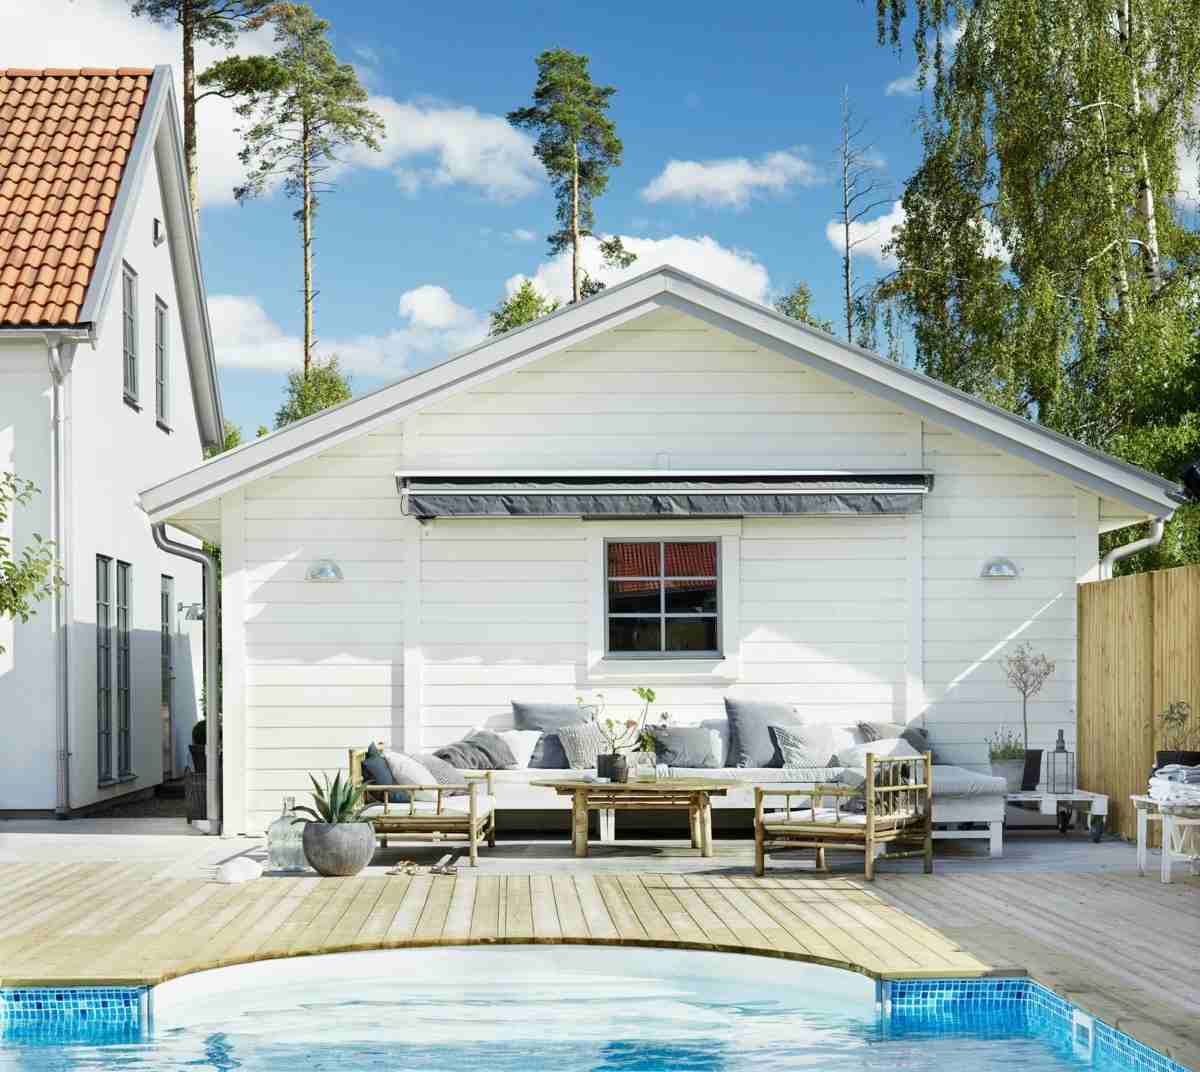 Idee für eine Terrasse vor dem Pool mit niedrigen Lounge Möbeln